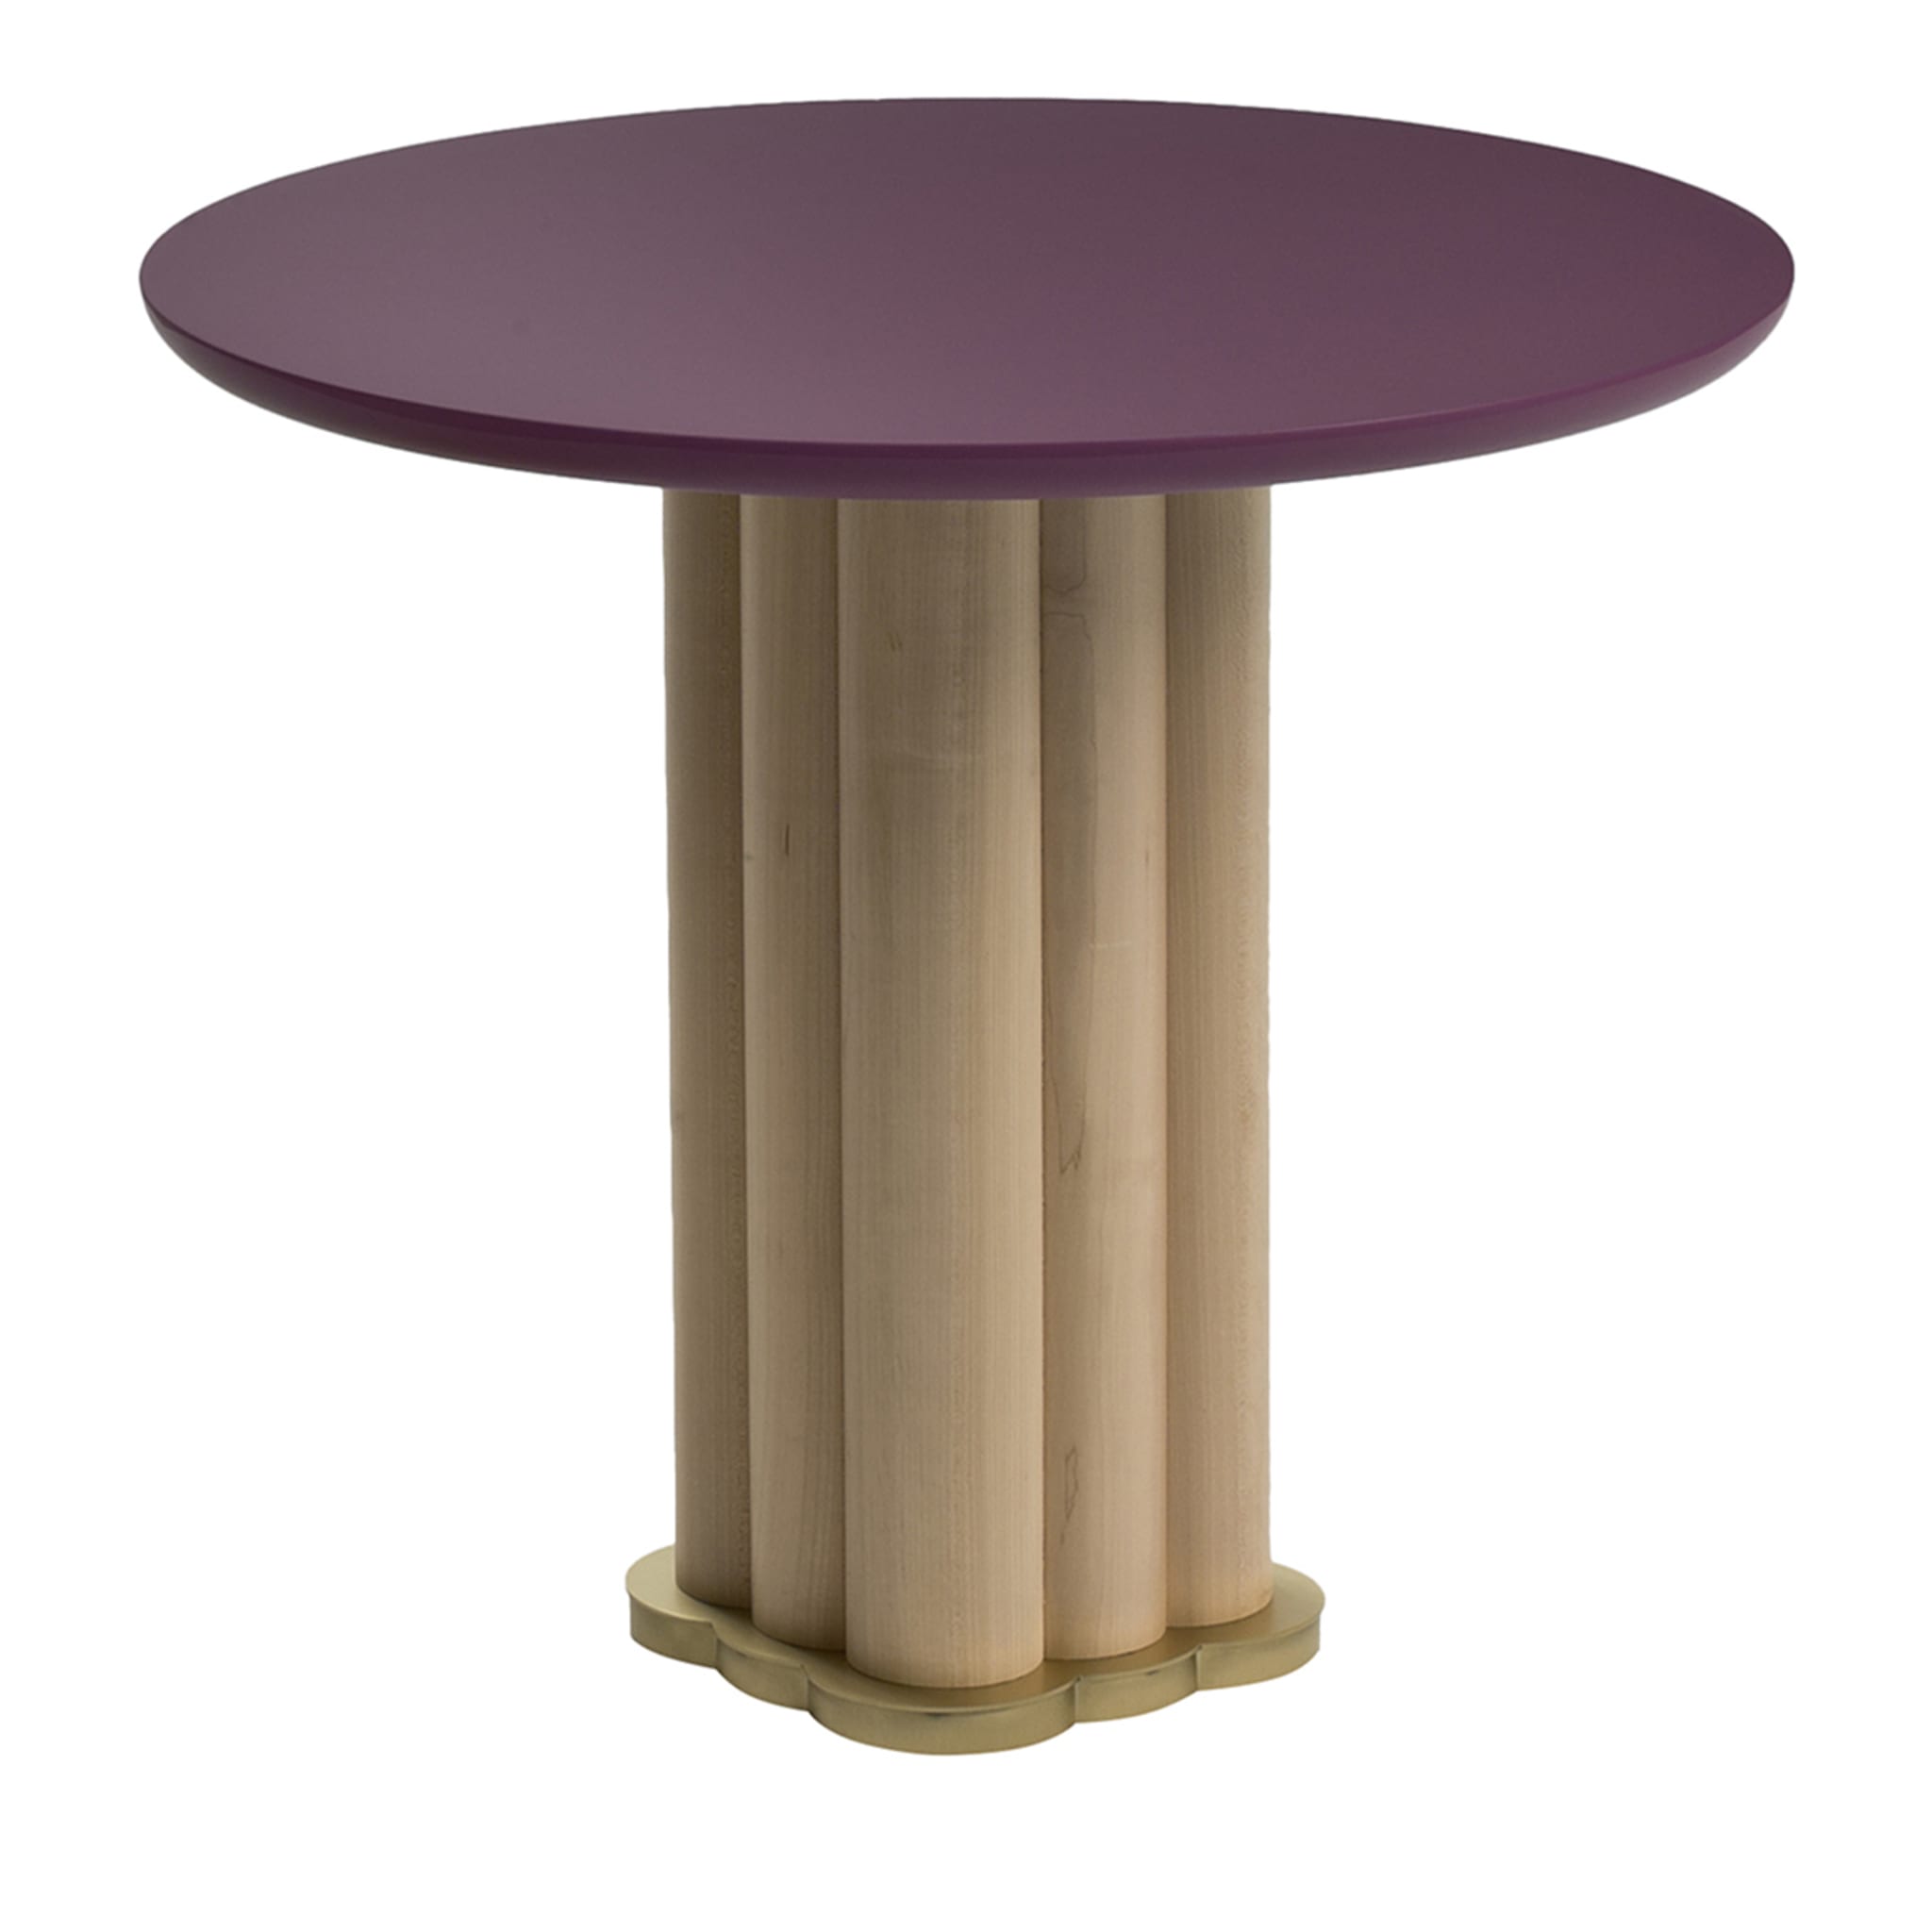 Flo Round Bistro Table by Lorenza Bozzoli - Main view